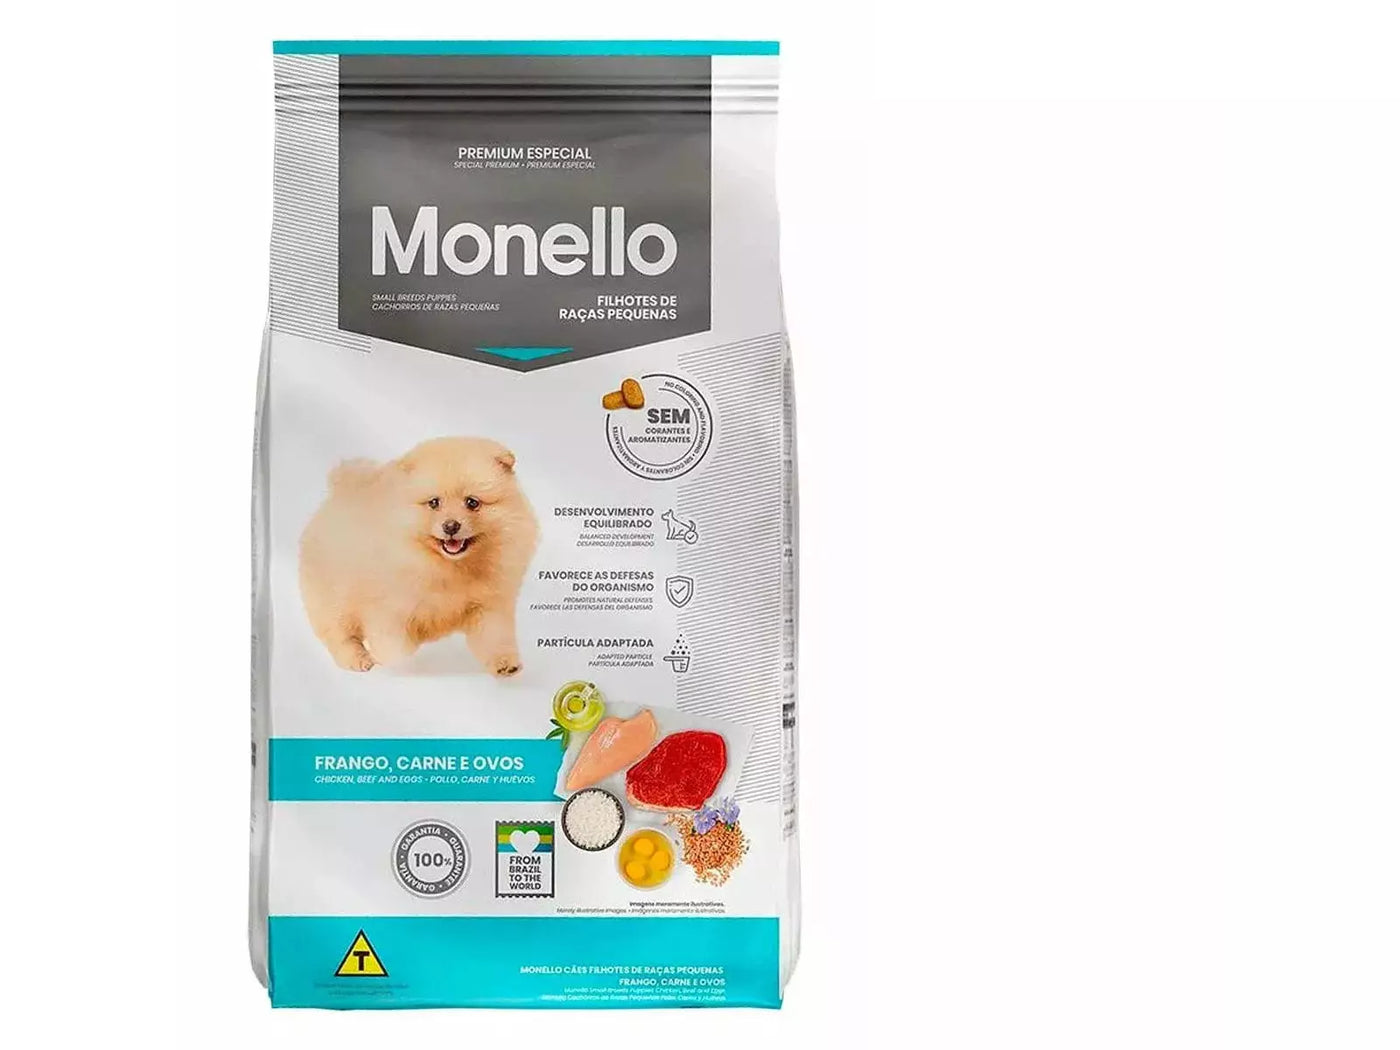 Monello Special Premium Small Breed Puppy 10.1Kg